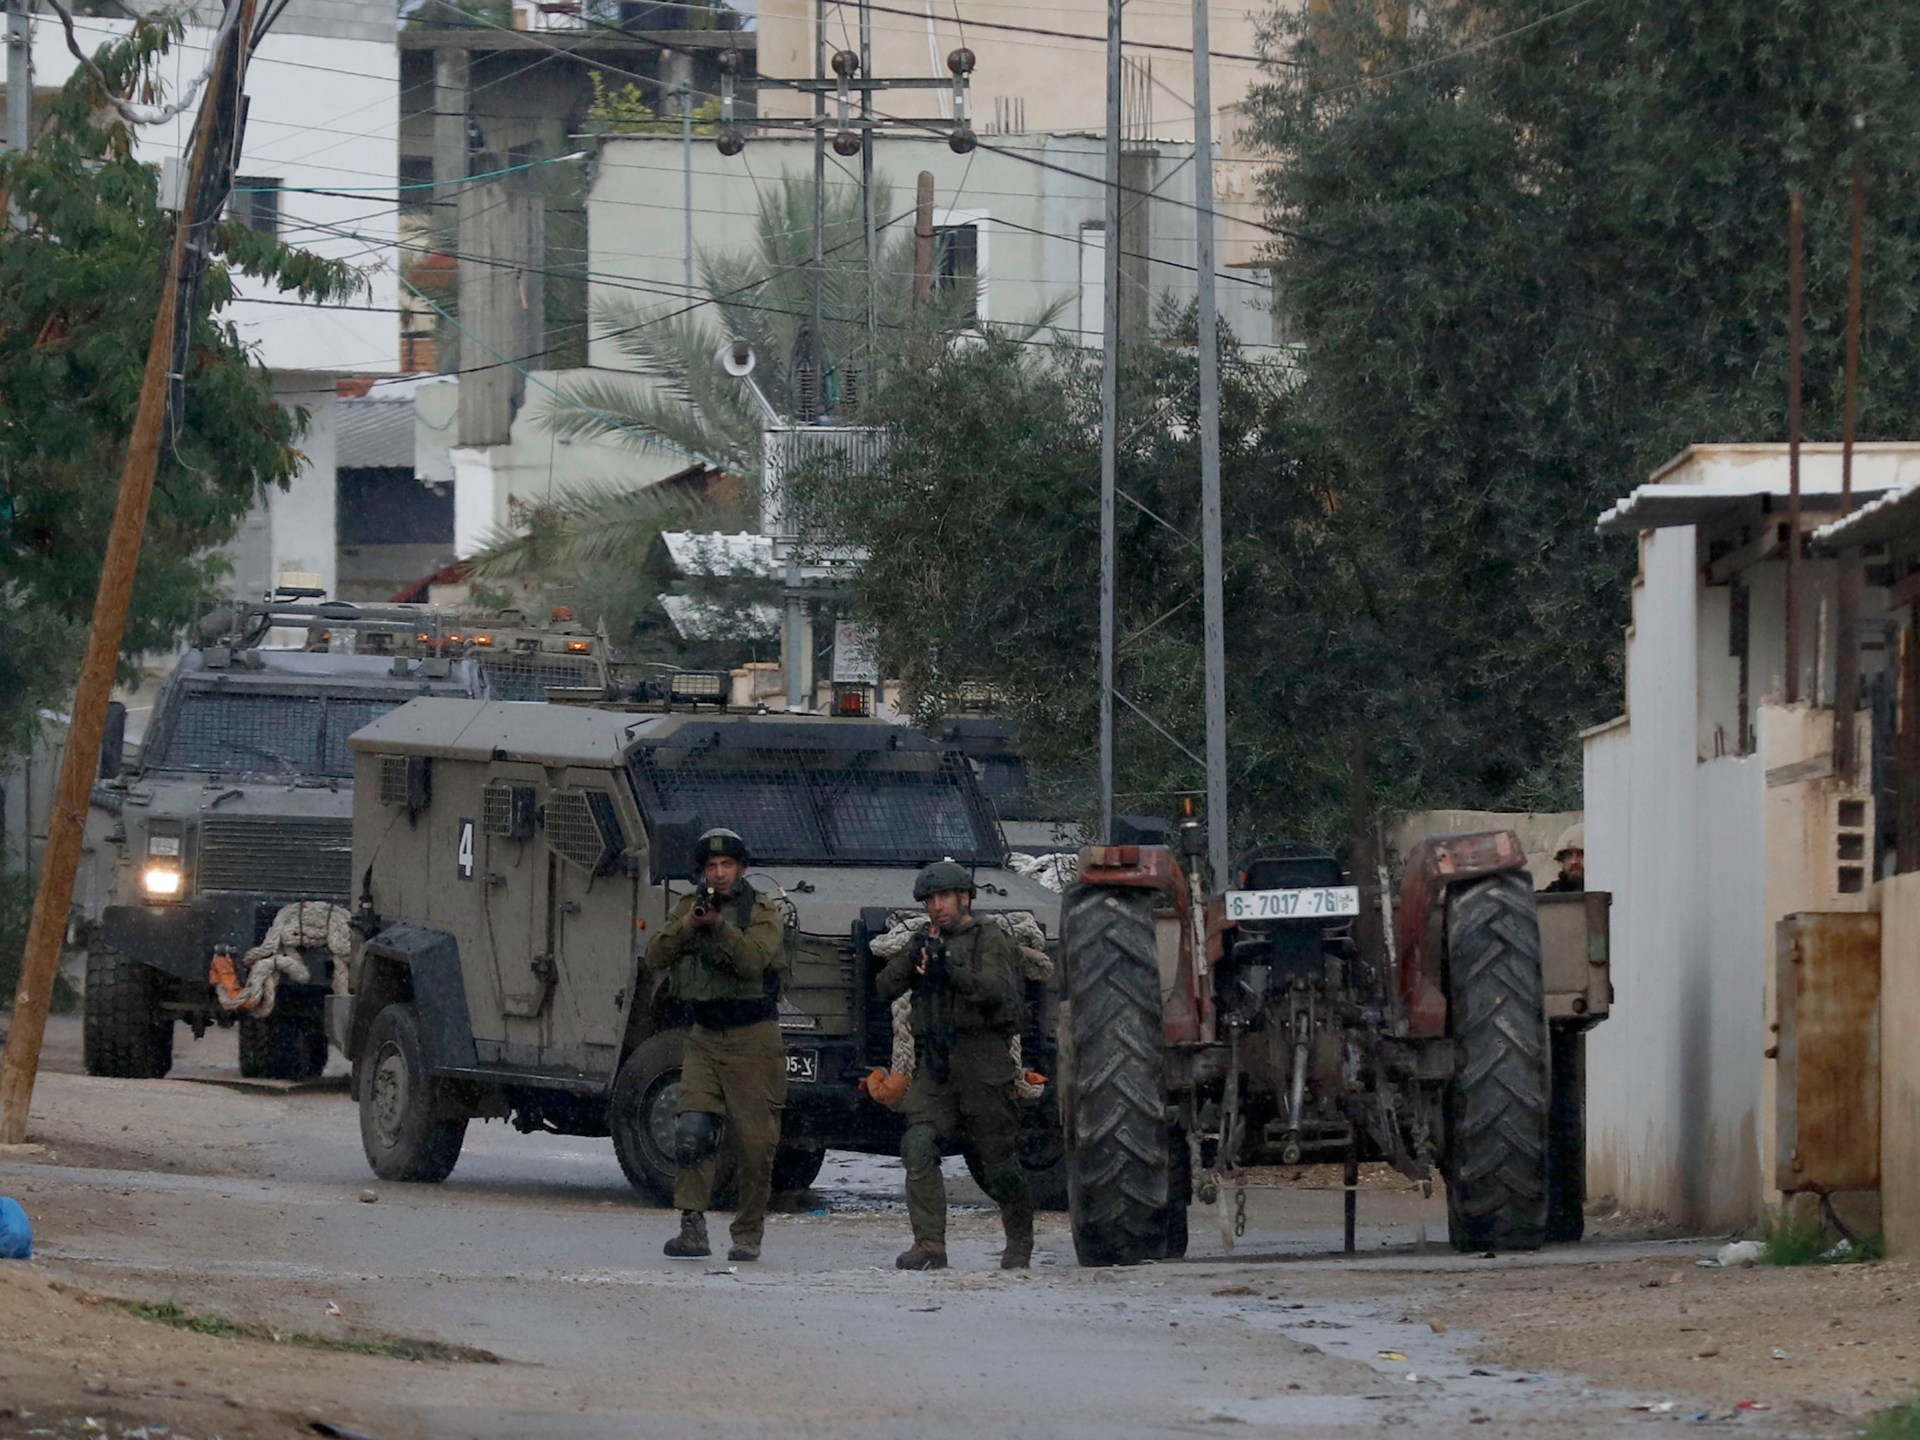 شهيد قرب بيت لحم وإصابة فلسطيني برصاص الاحتلال في القدس | أخبار – البوكس نيوز